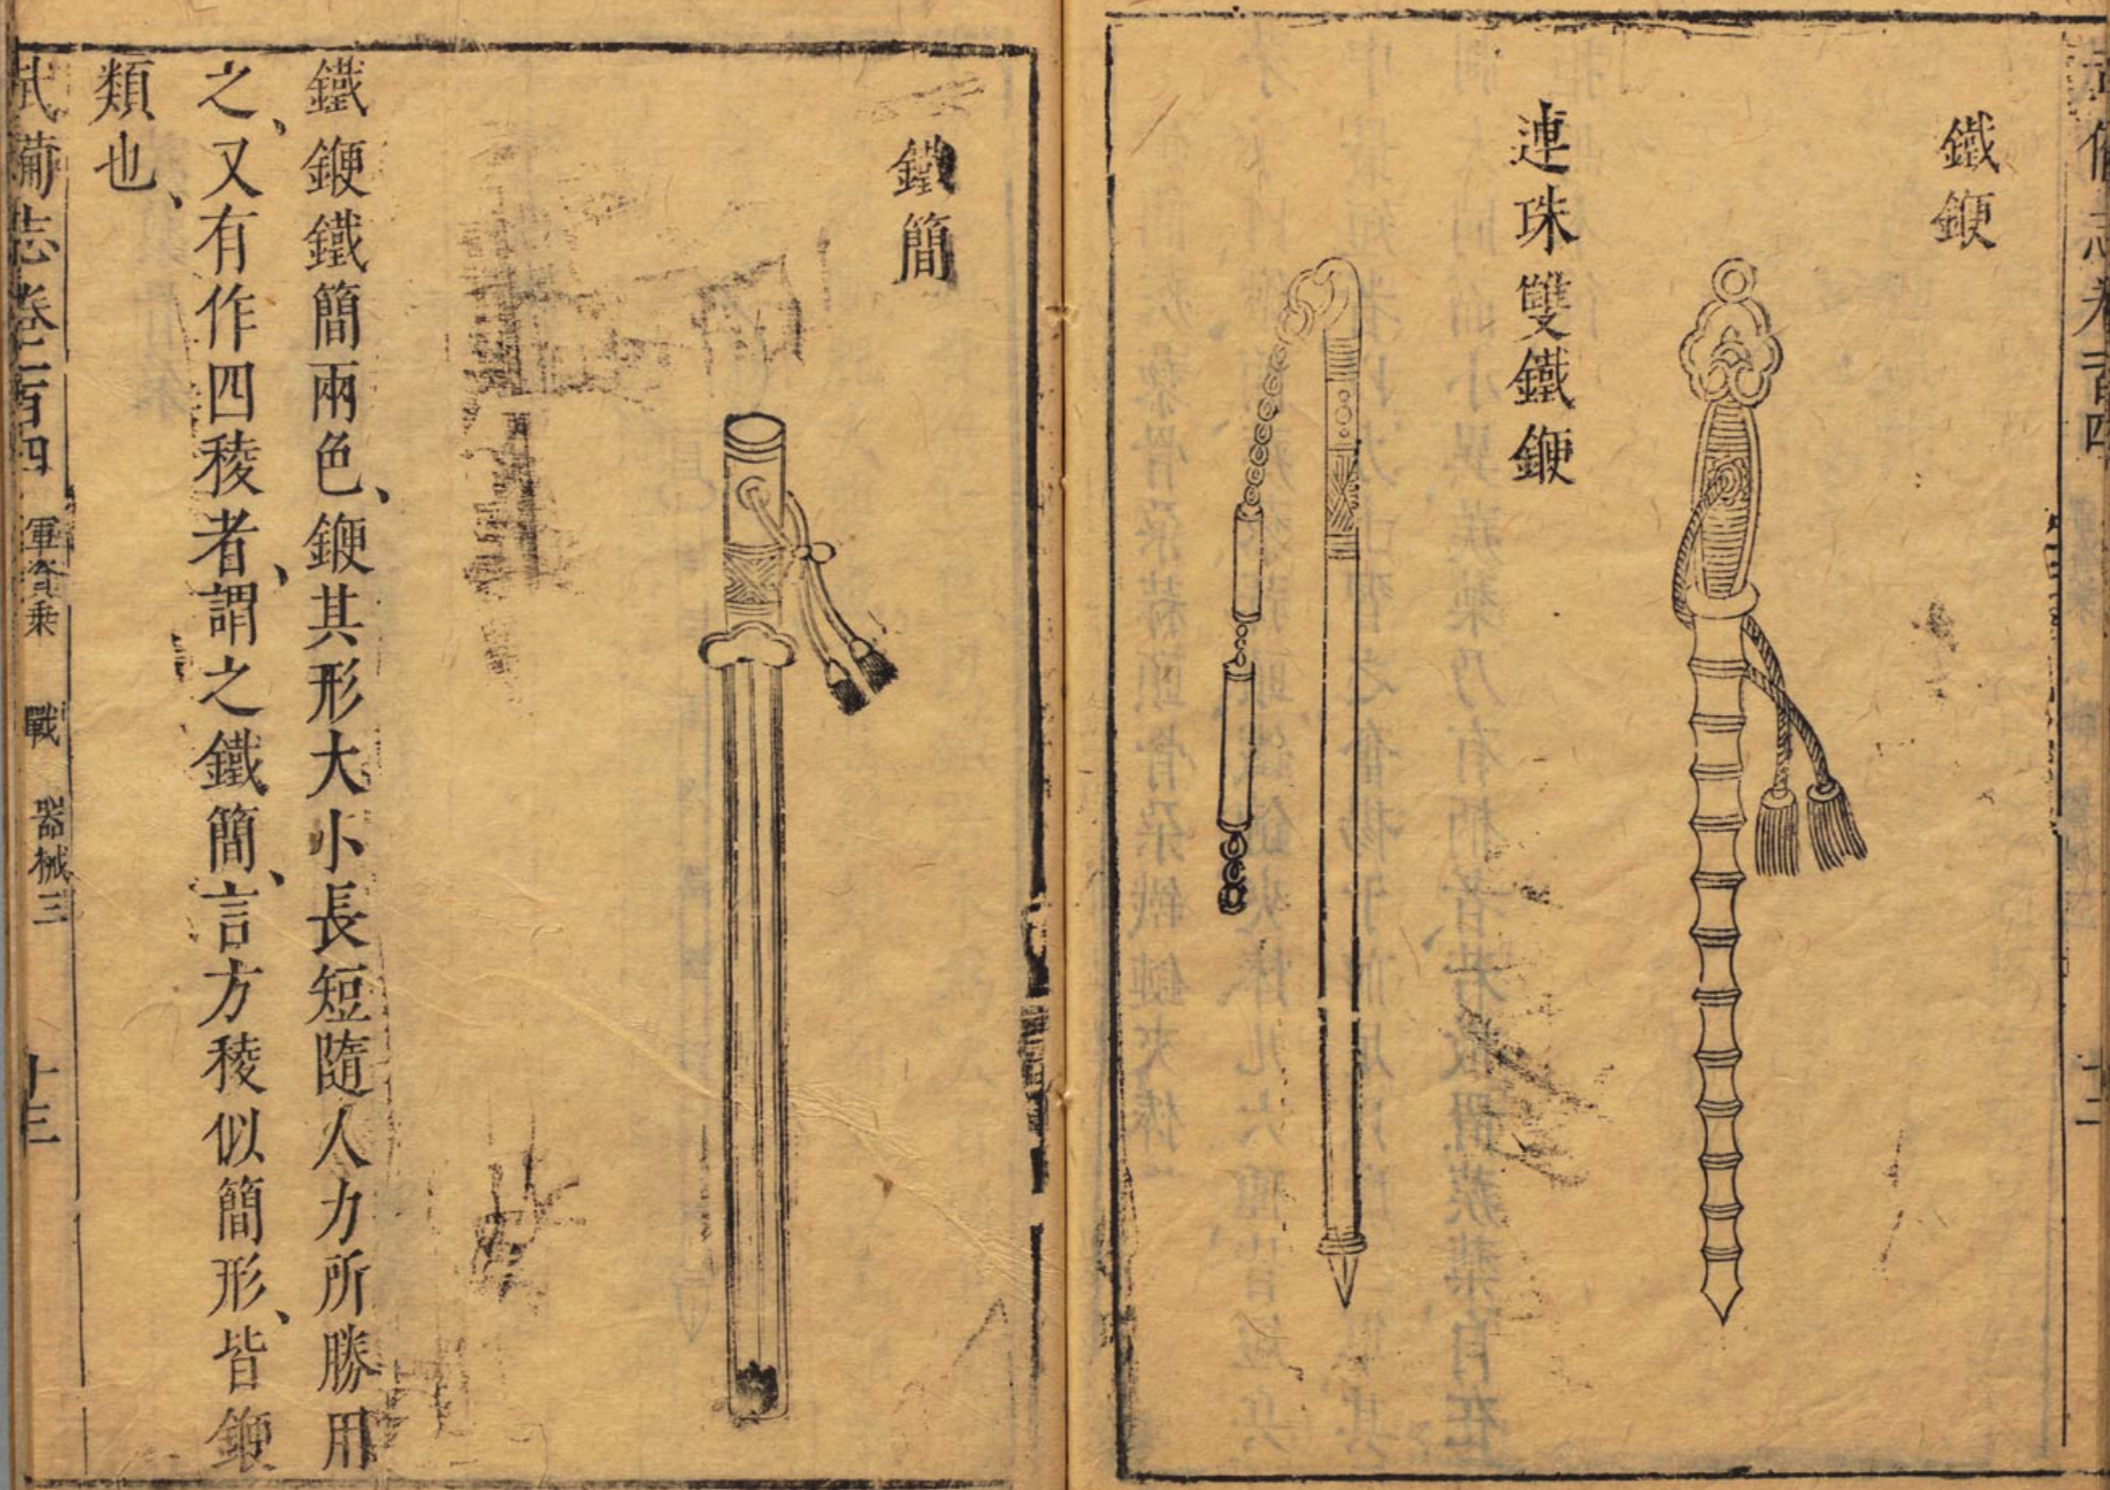 An iron whip (bian) in the Ming wubeizhi